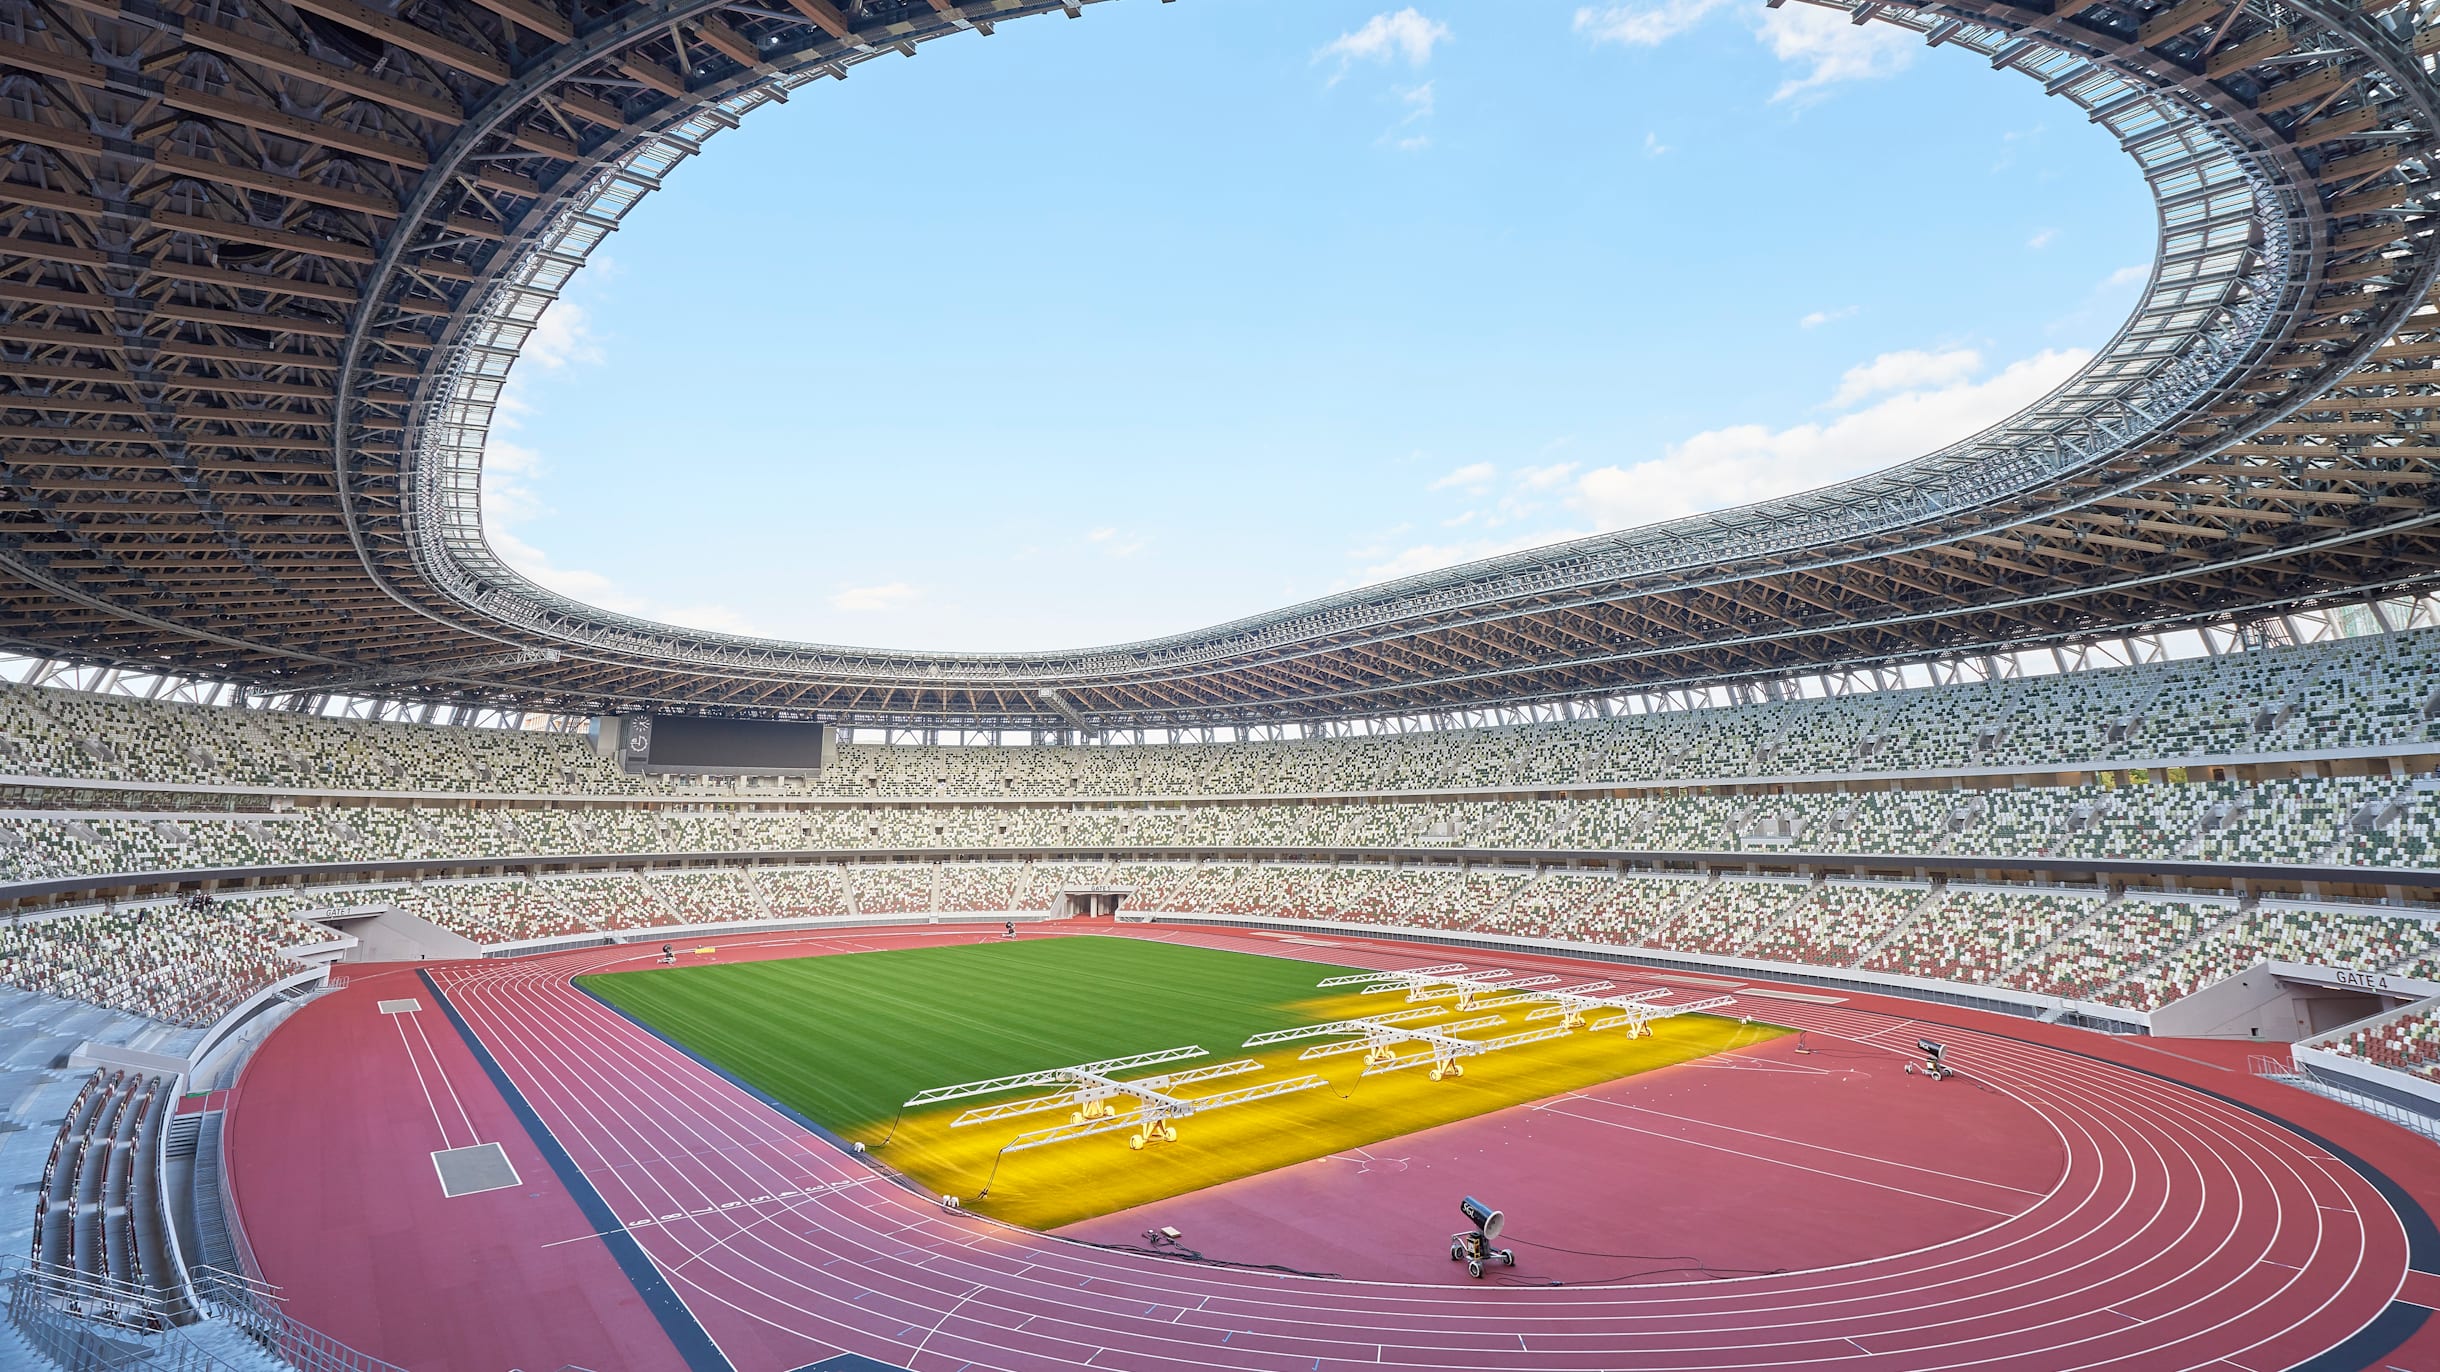 東京2020大会の開閉会式が行われる新国立競技場が完成...12月21日にお披露目イベント